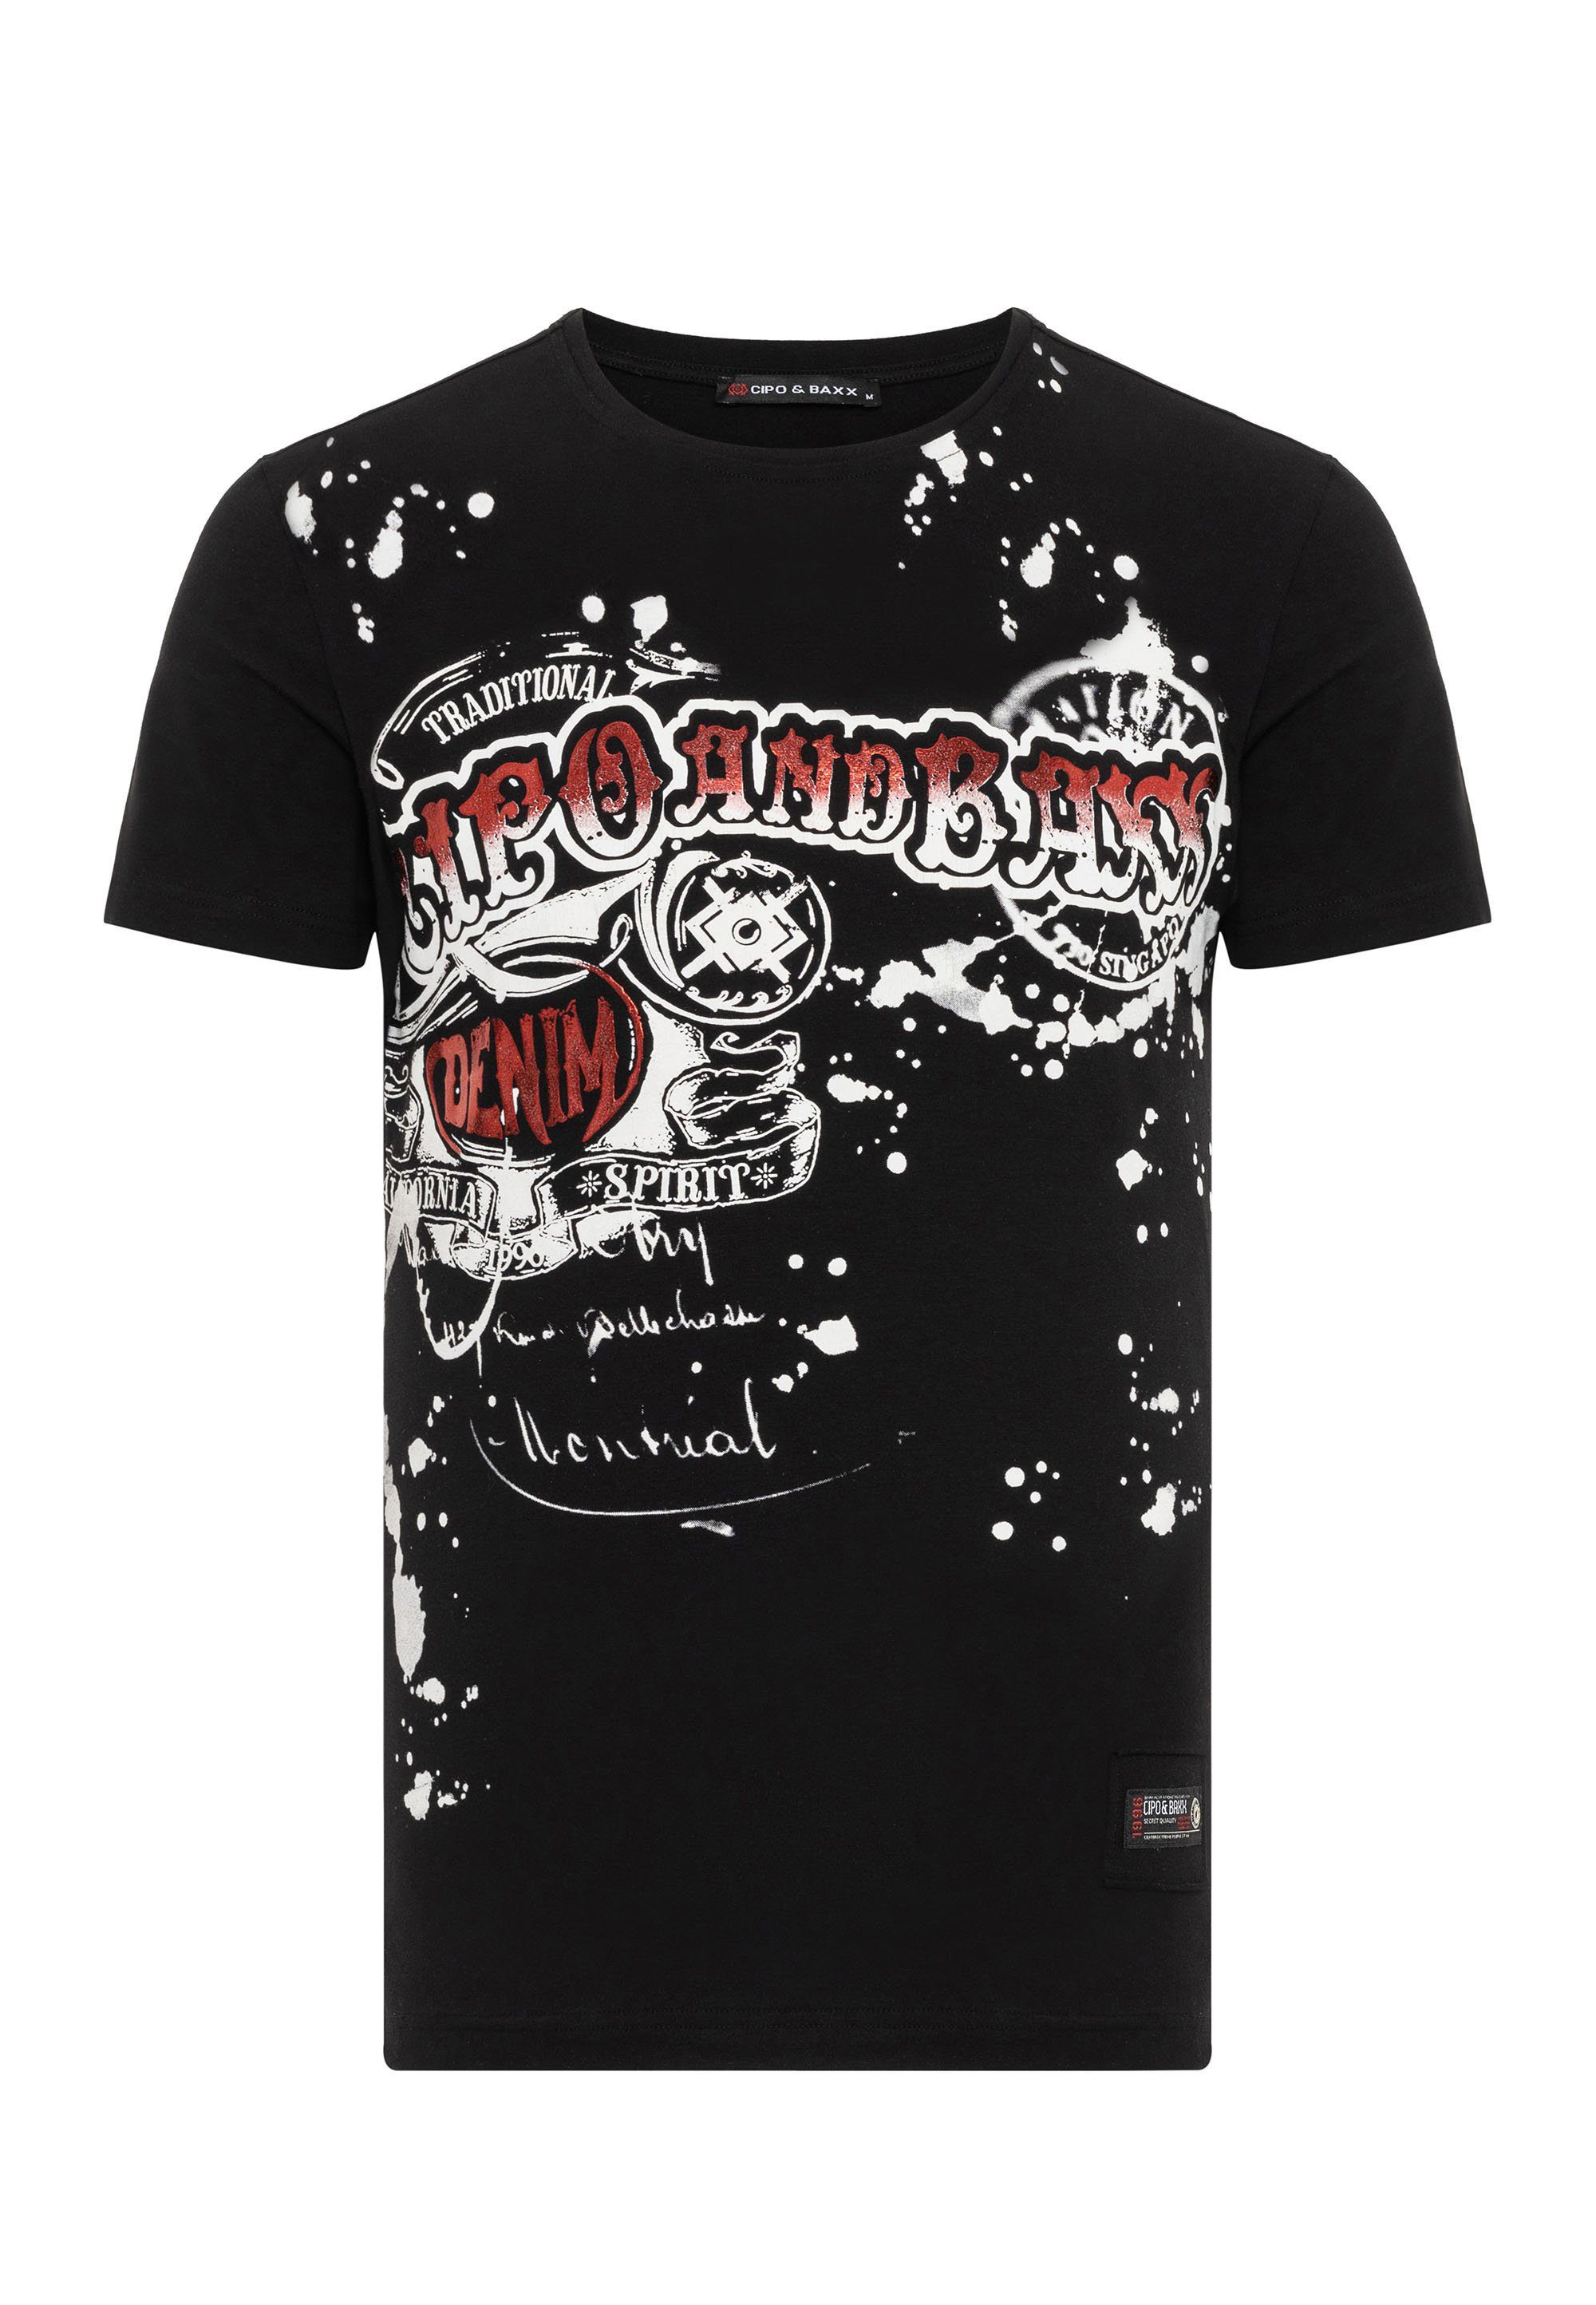 Cipo & schwarz coolem Baxx mit T-Shirt Markenprint